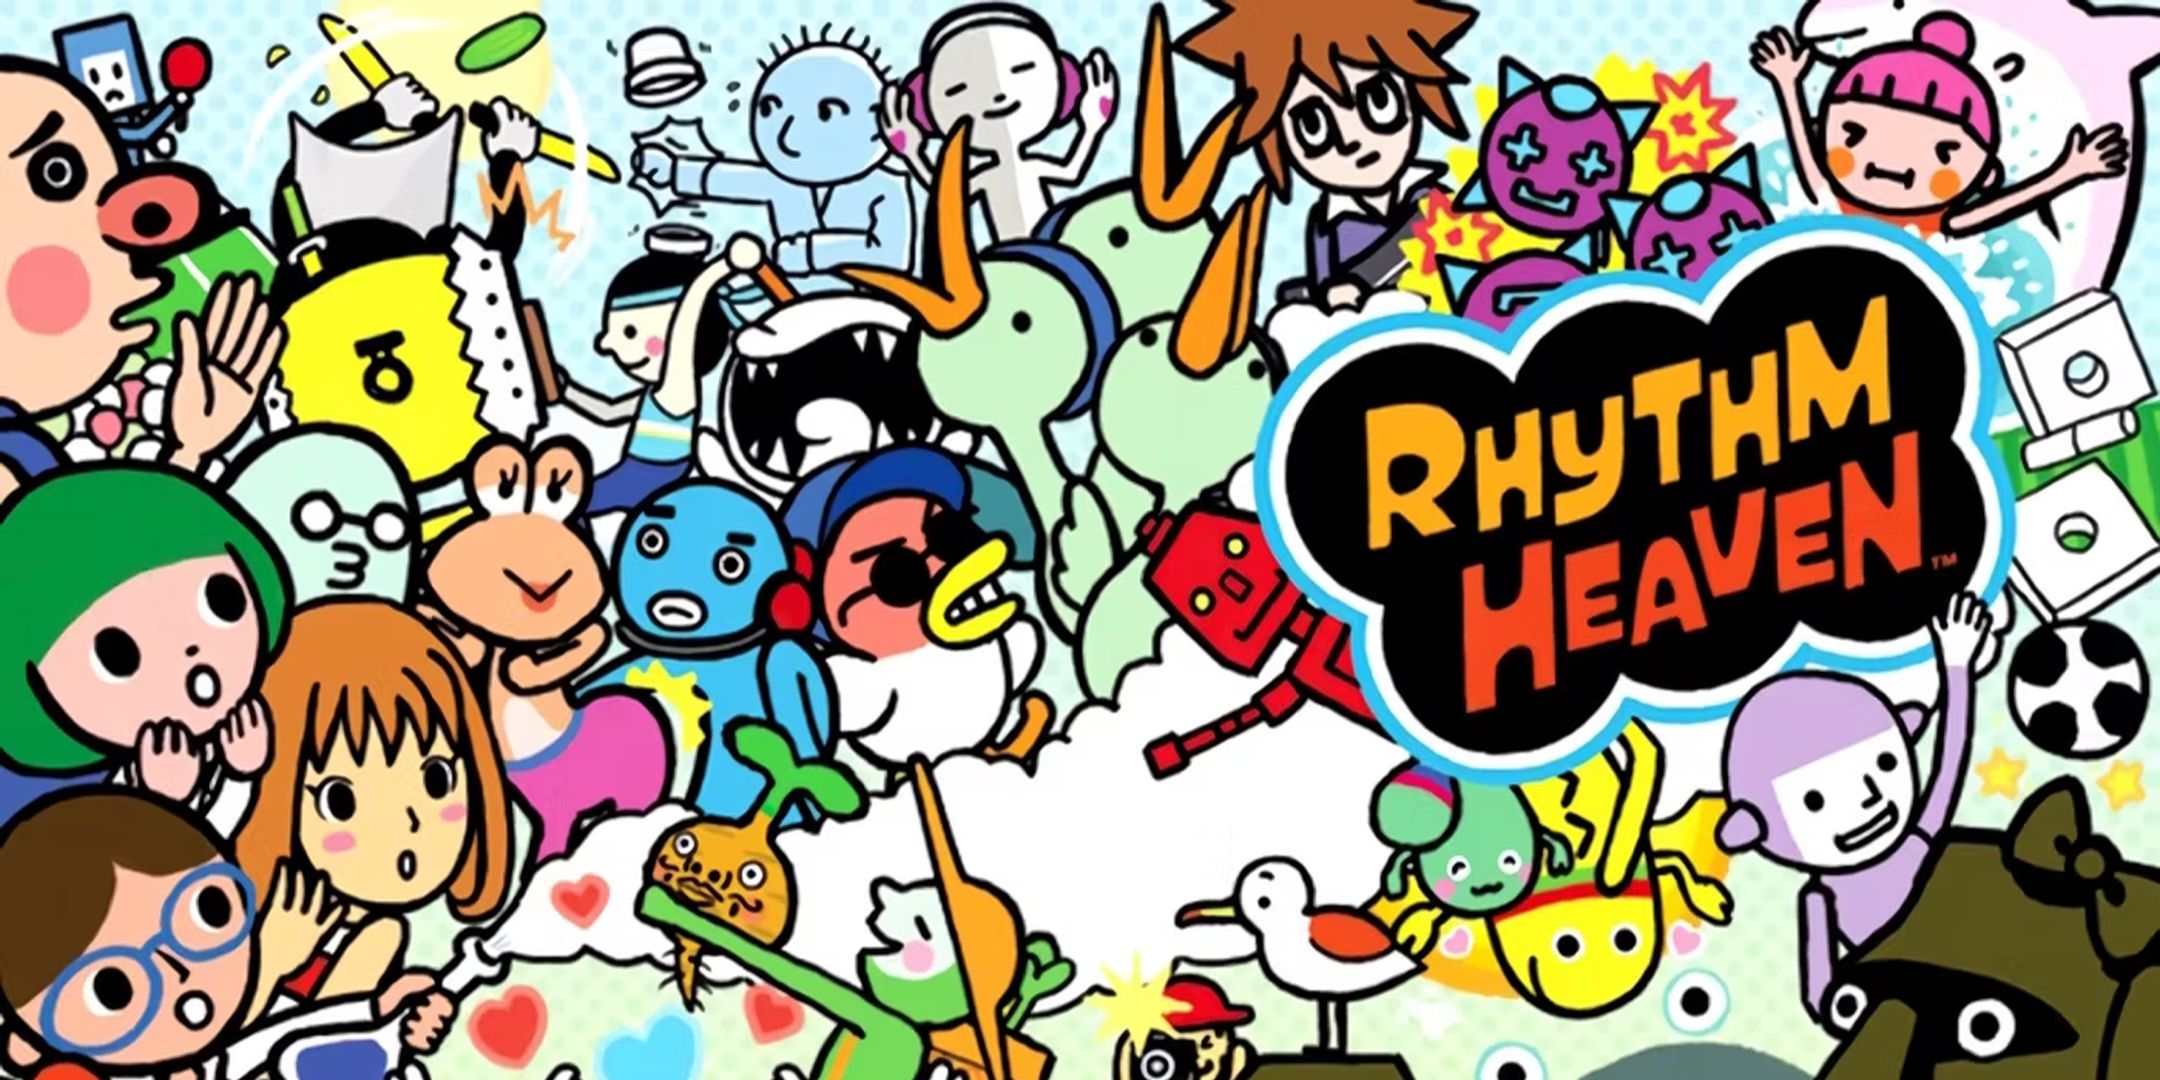 Arte mostrando uma mistura de personagens de desenho animado do jogo Rhythm Heaven para DS.